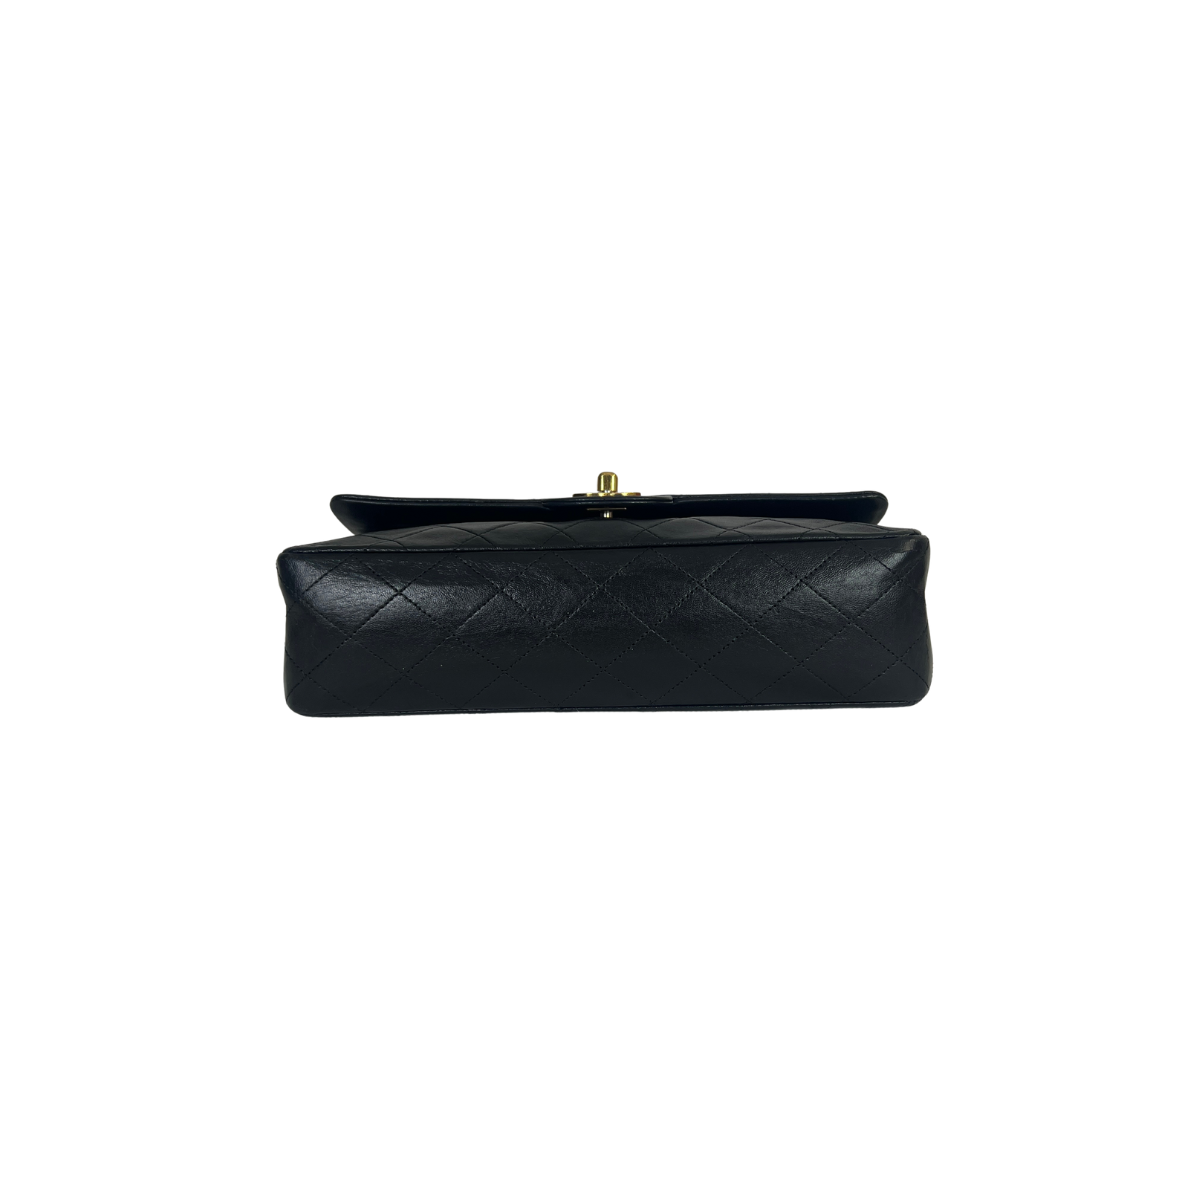 Chanel Beige Classic Medium Double Flap Bag Lambskin Leather – l'Étoile de  Saint Honoré